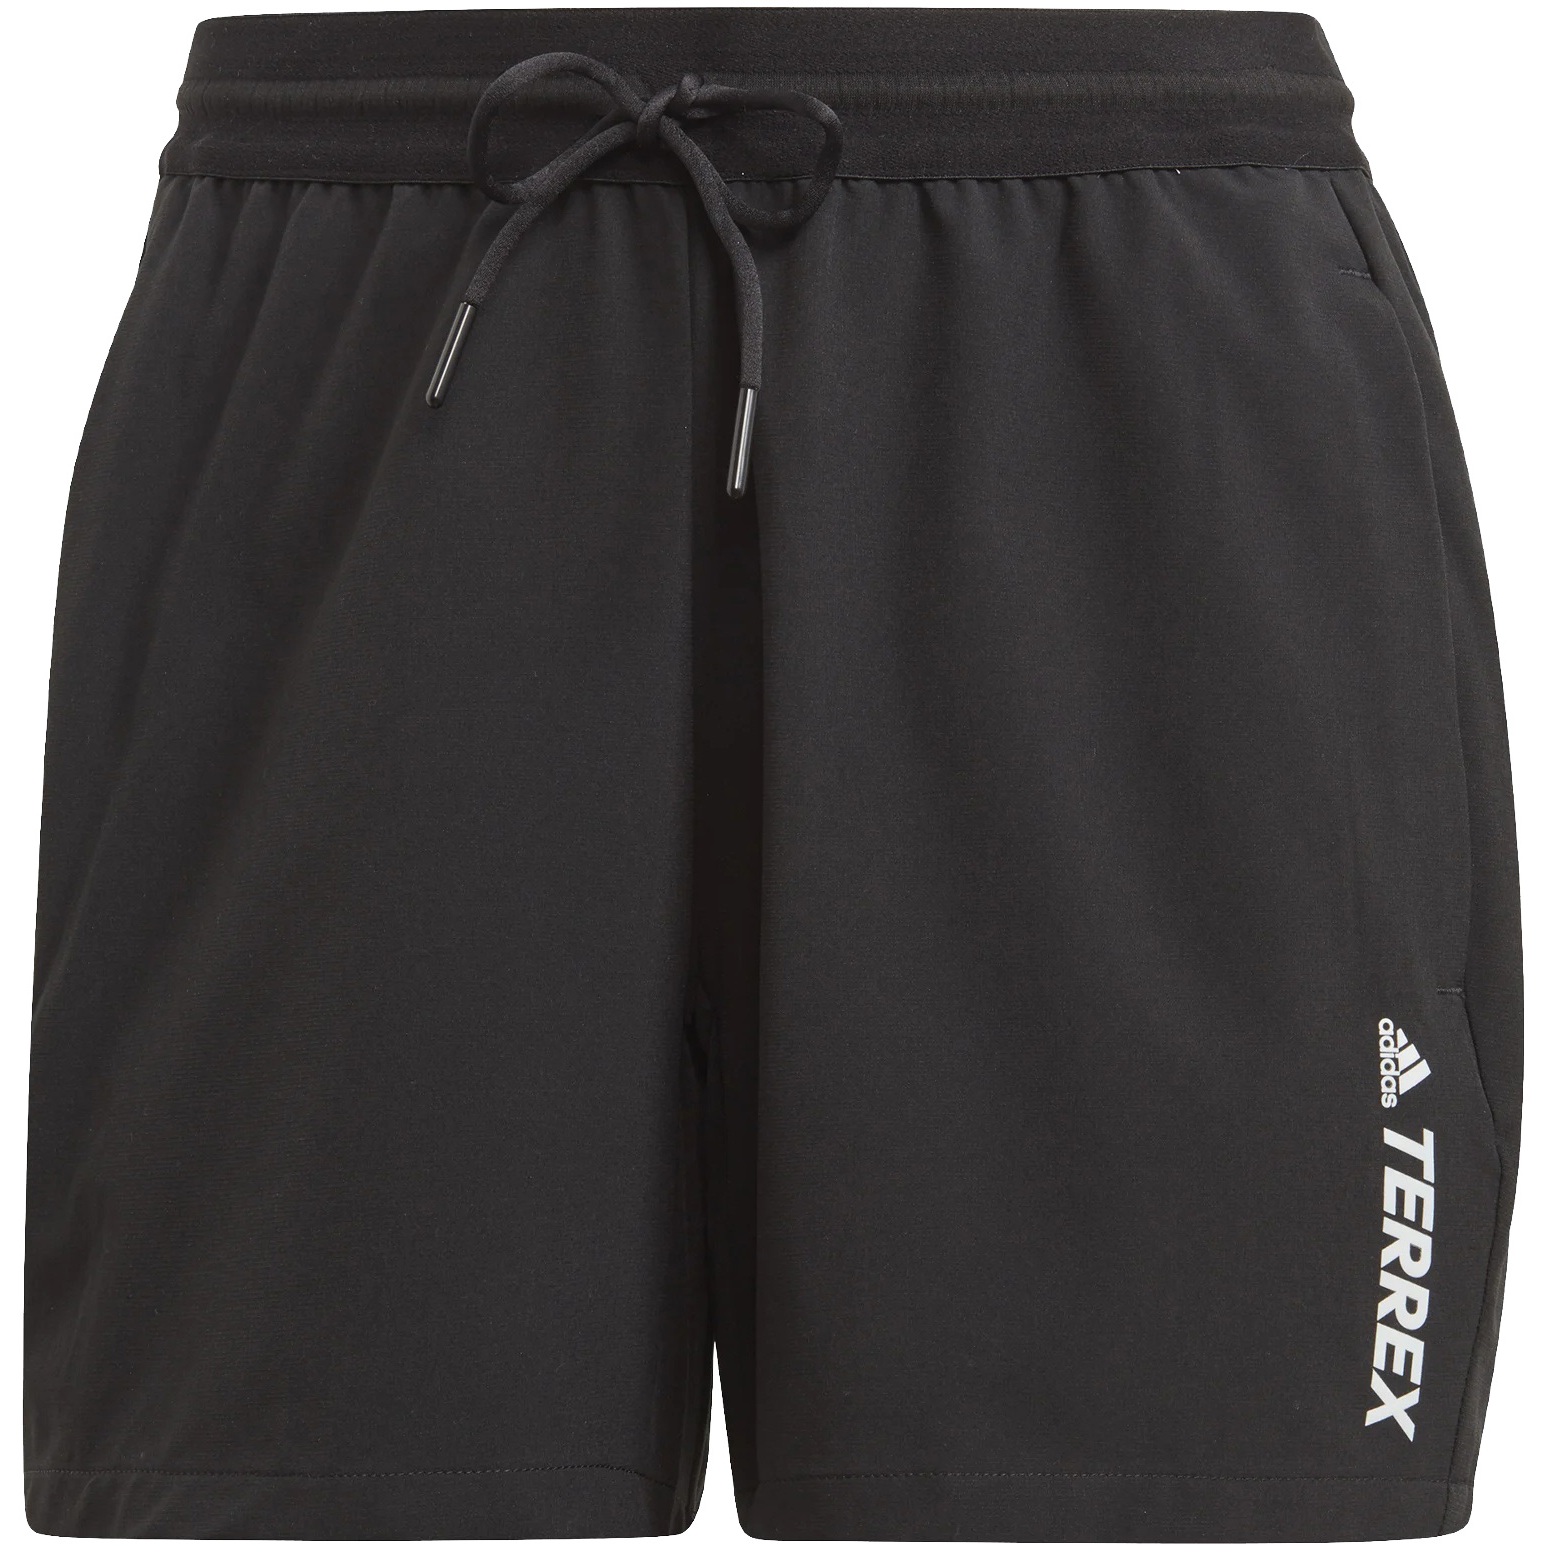 Produktbild von adidas Frauen TERREX Liteflex Hiking Shorts - black GP8671